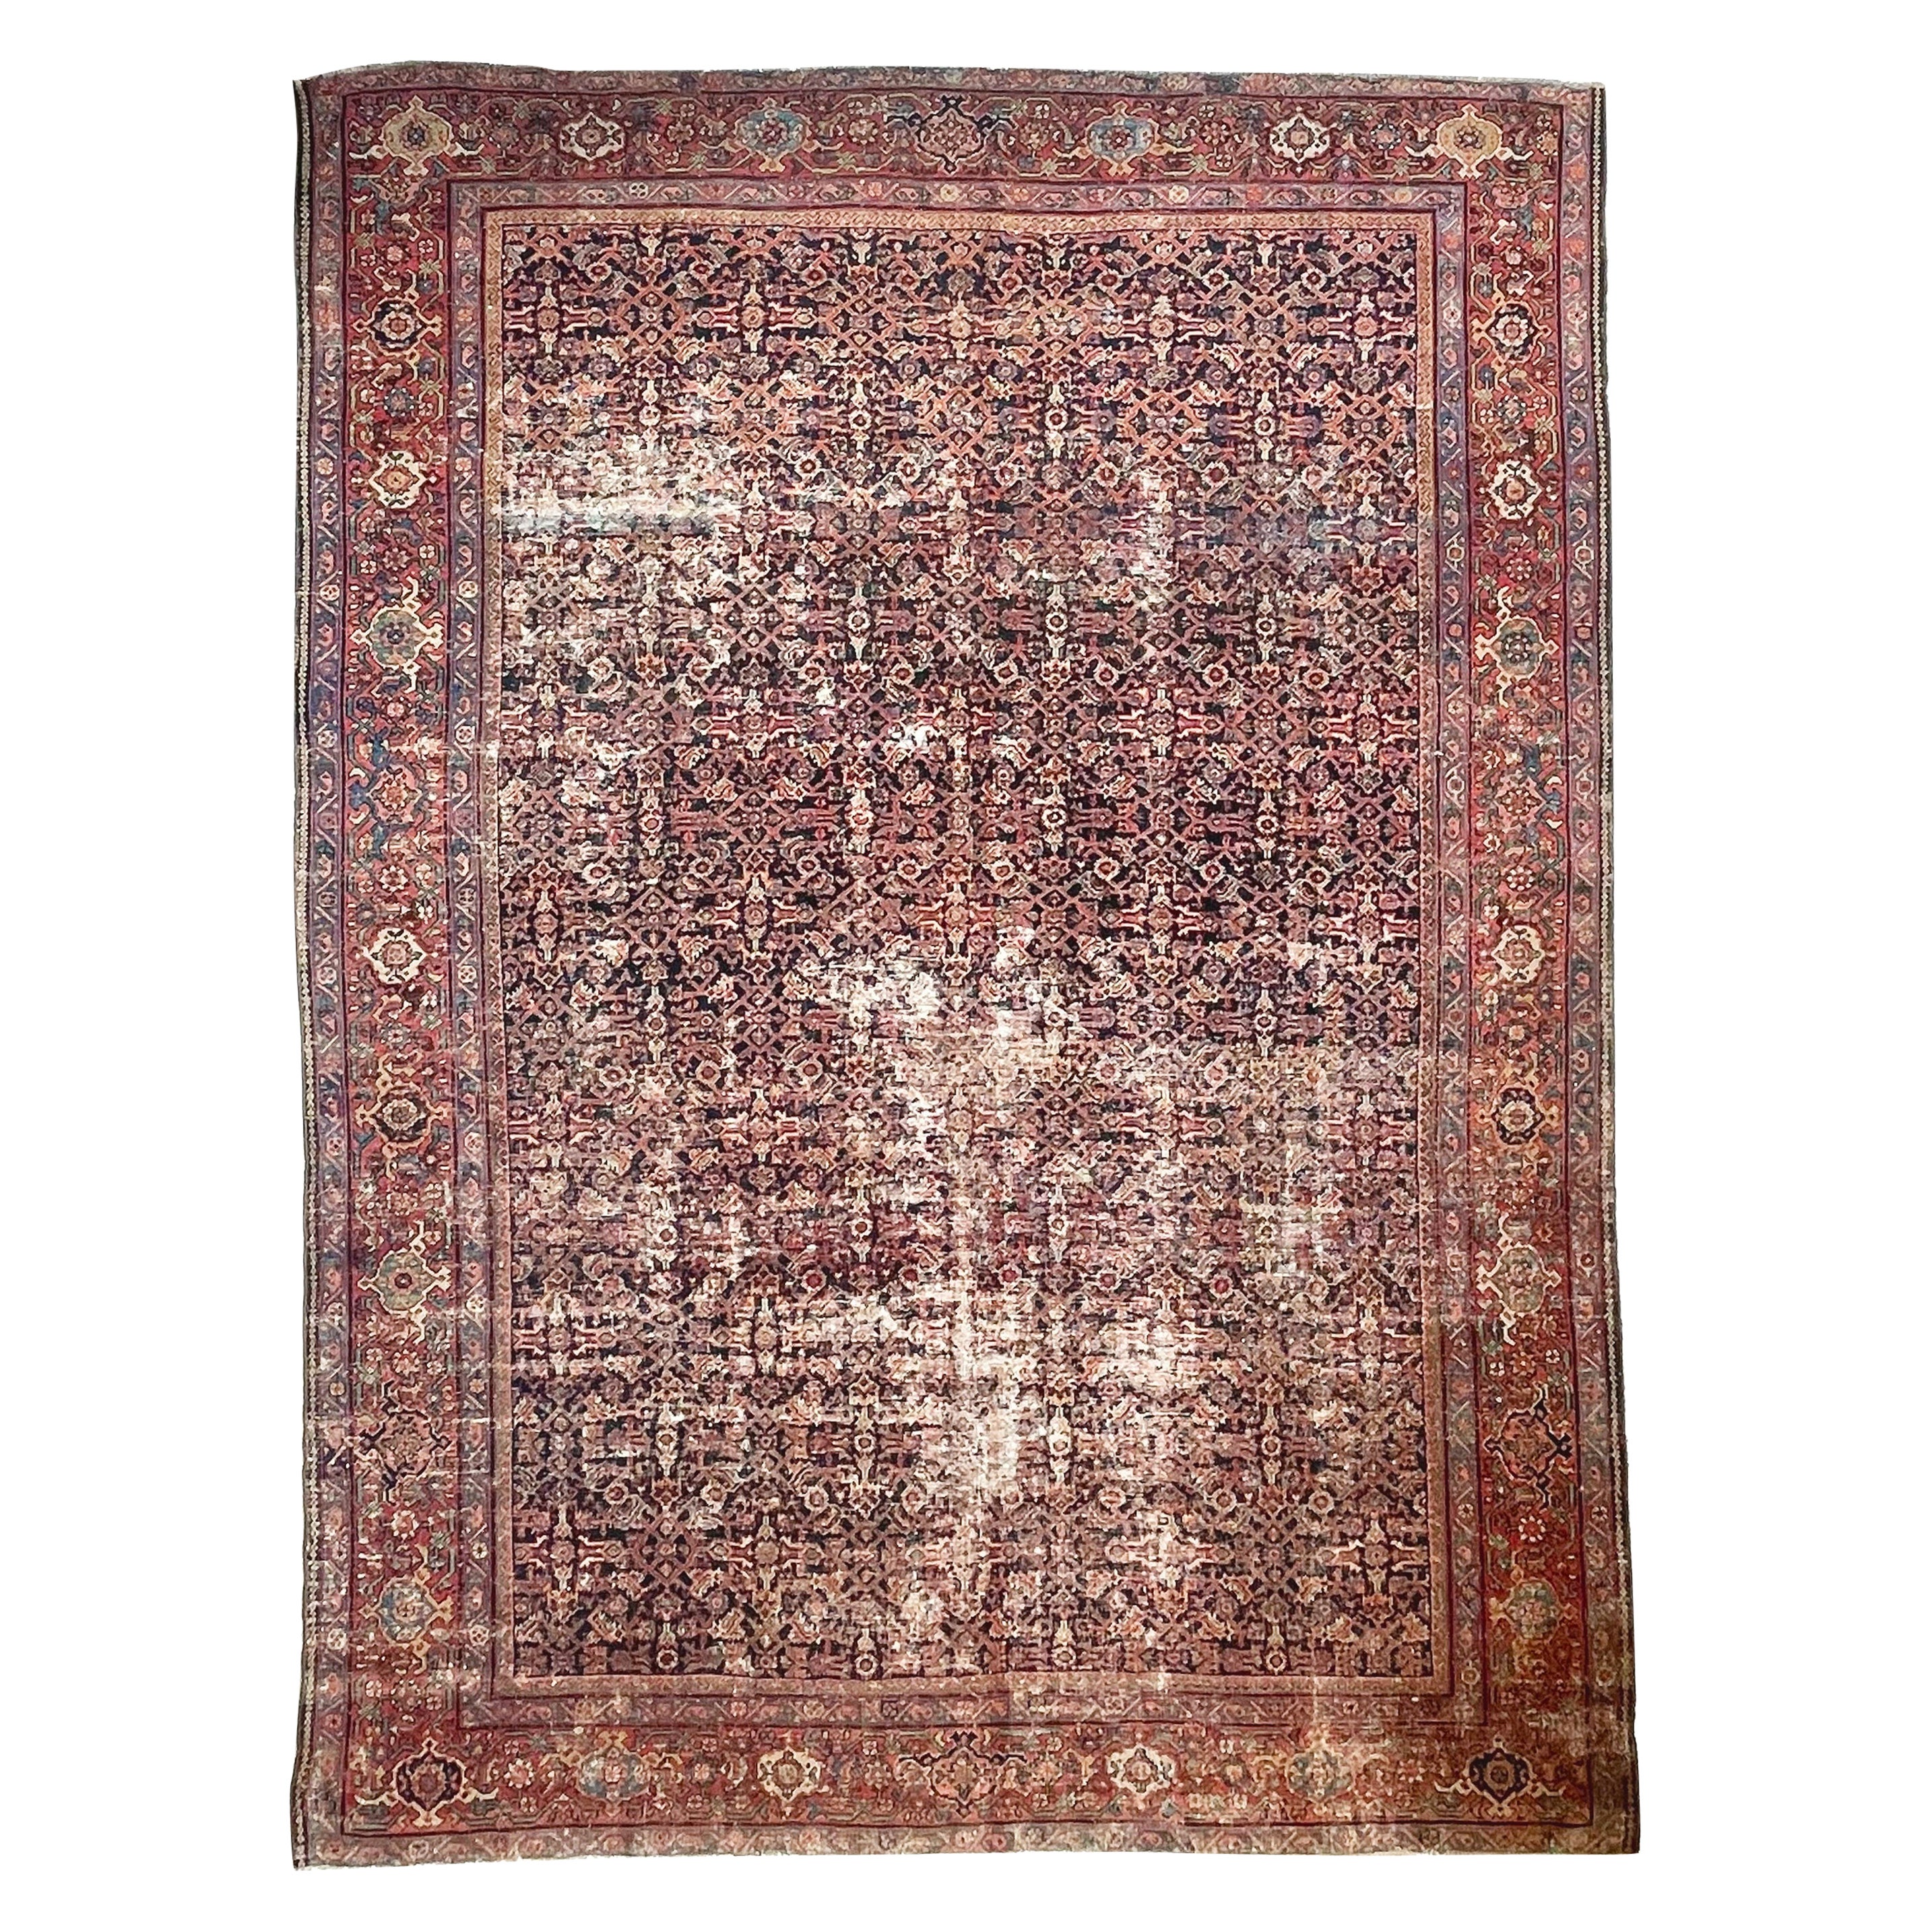 Antique Persian Carpet Rug in Deep Old-World Indigo, circa 1900-1915's For Sale